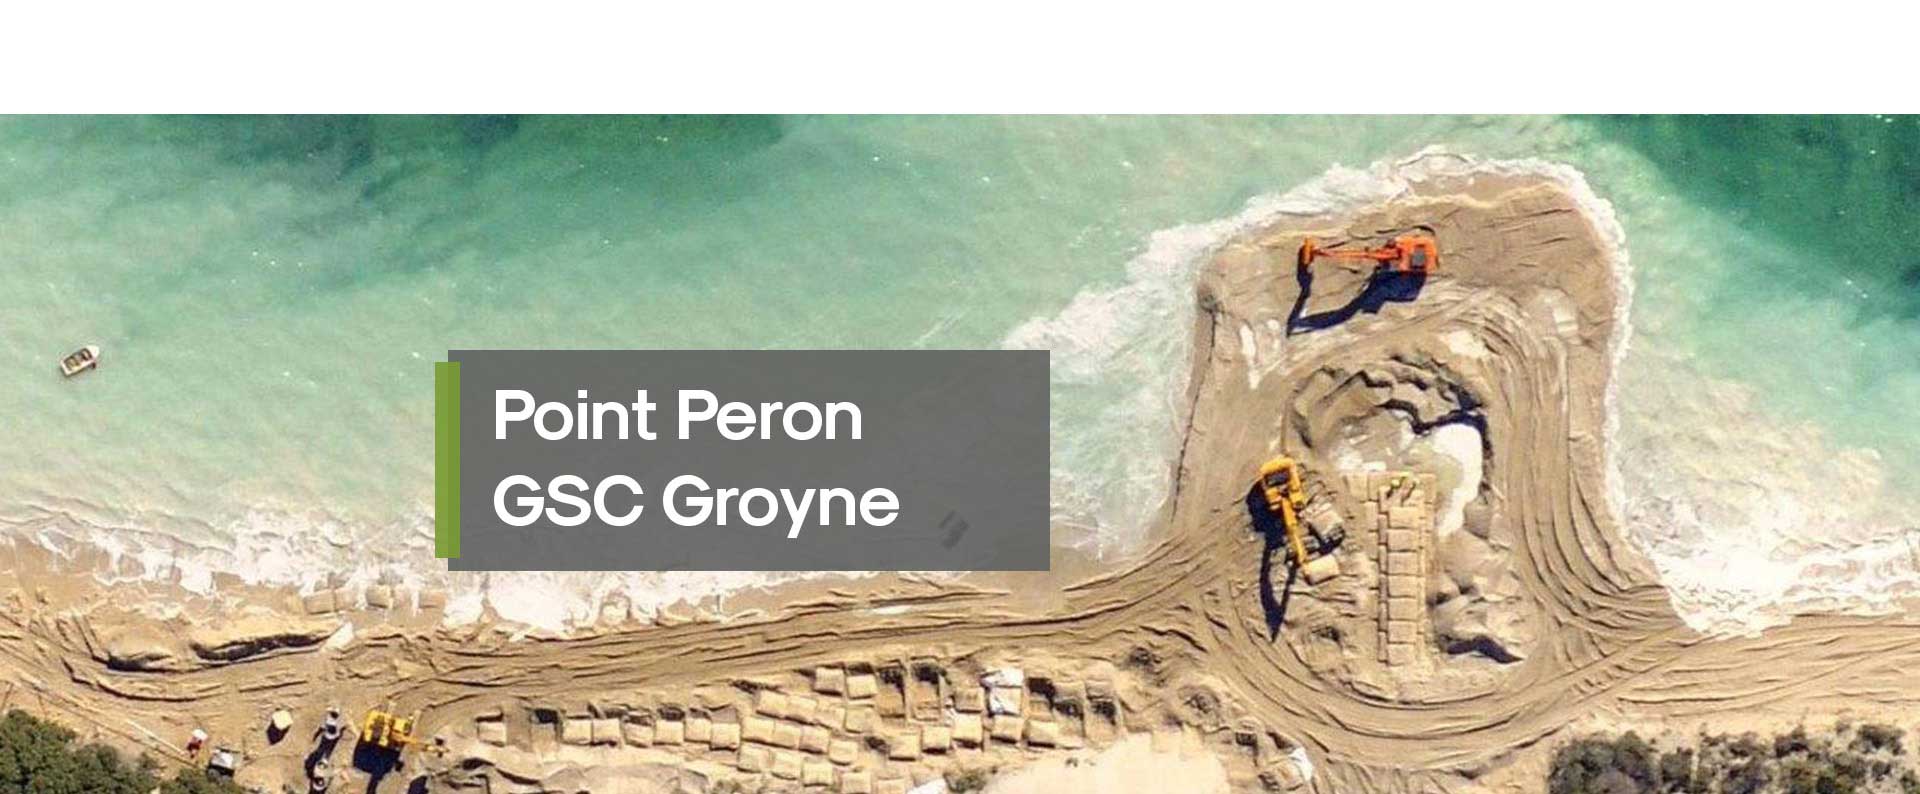 Point Peron GSC Groyne